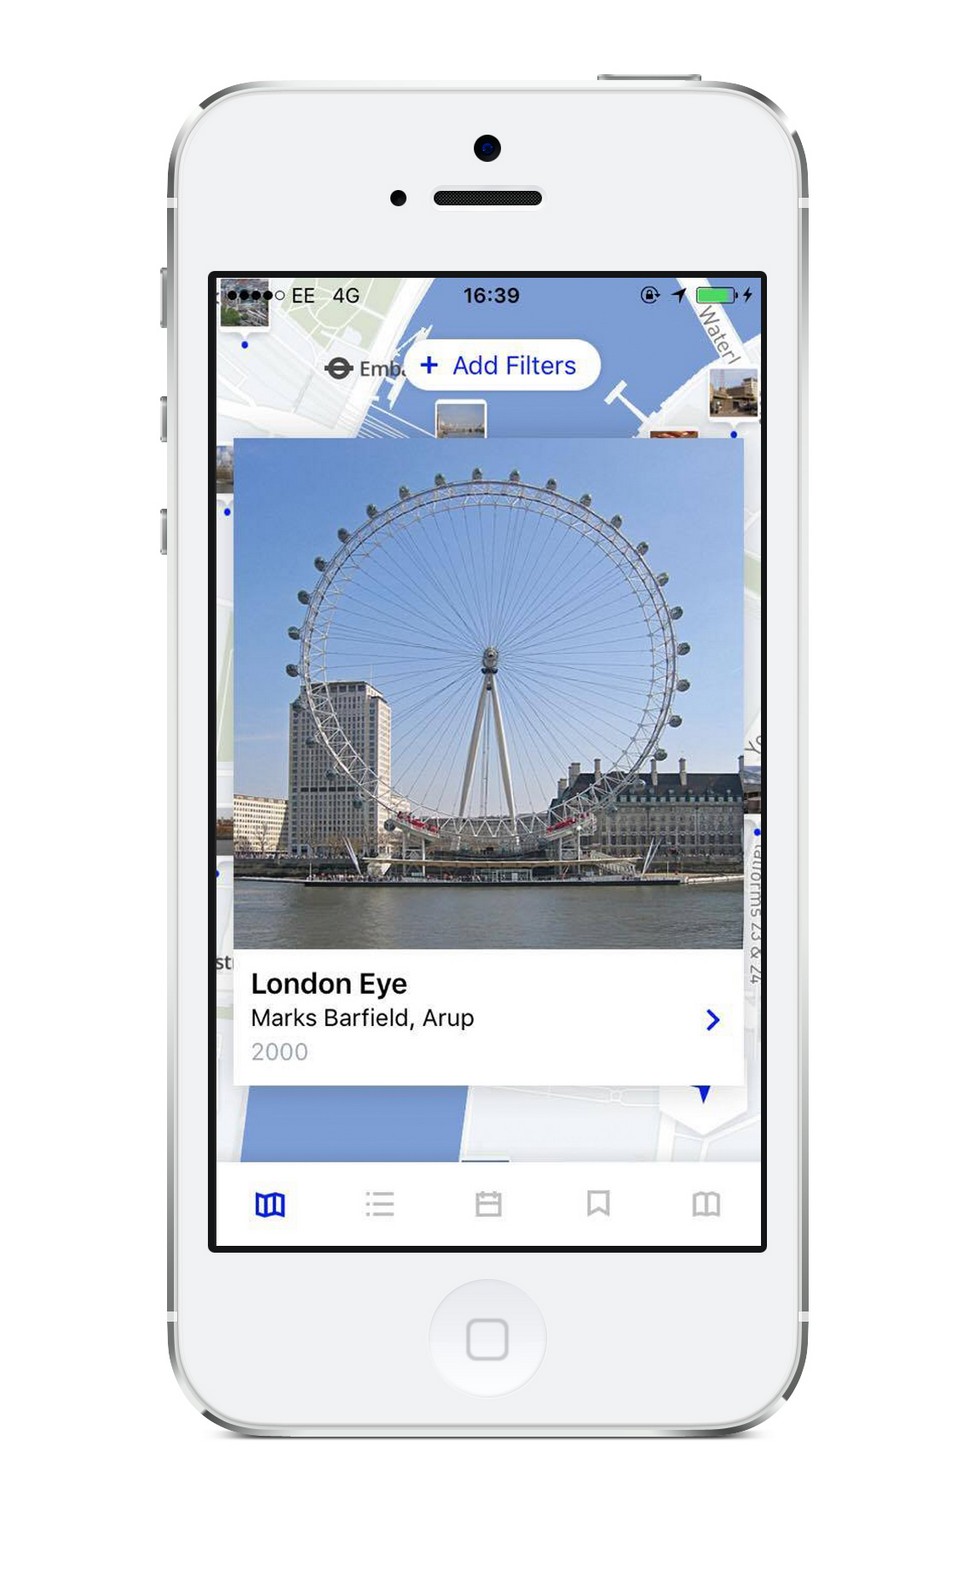 Przewodnik architektoniczny po Londynie - pobierz bezpłatną aplikację!